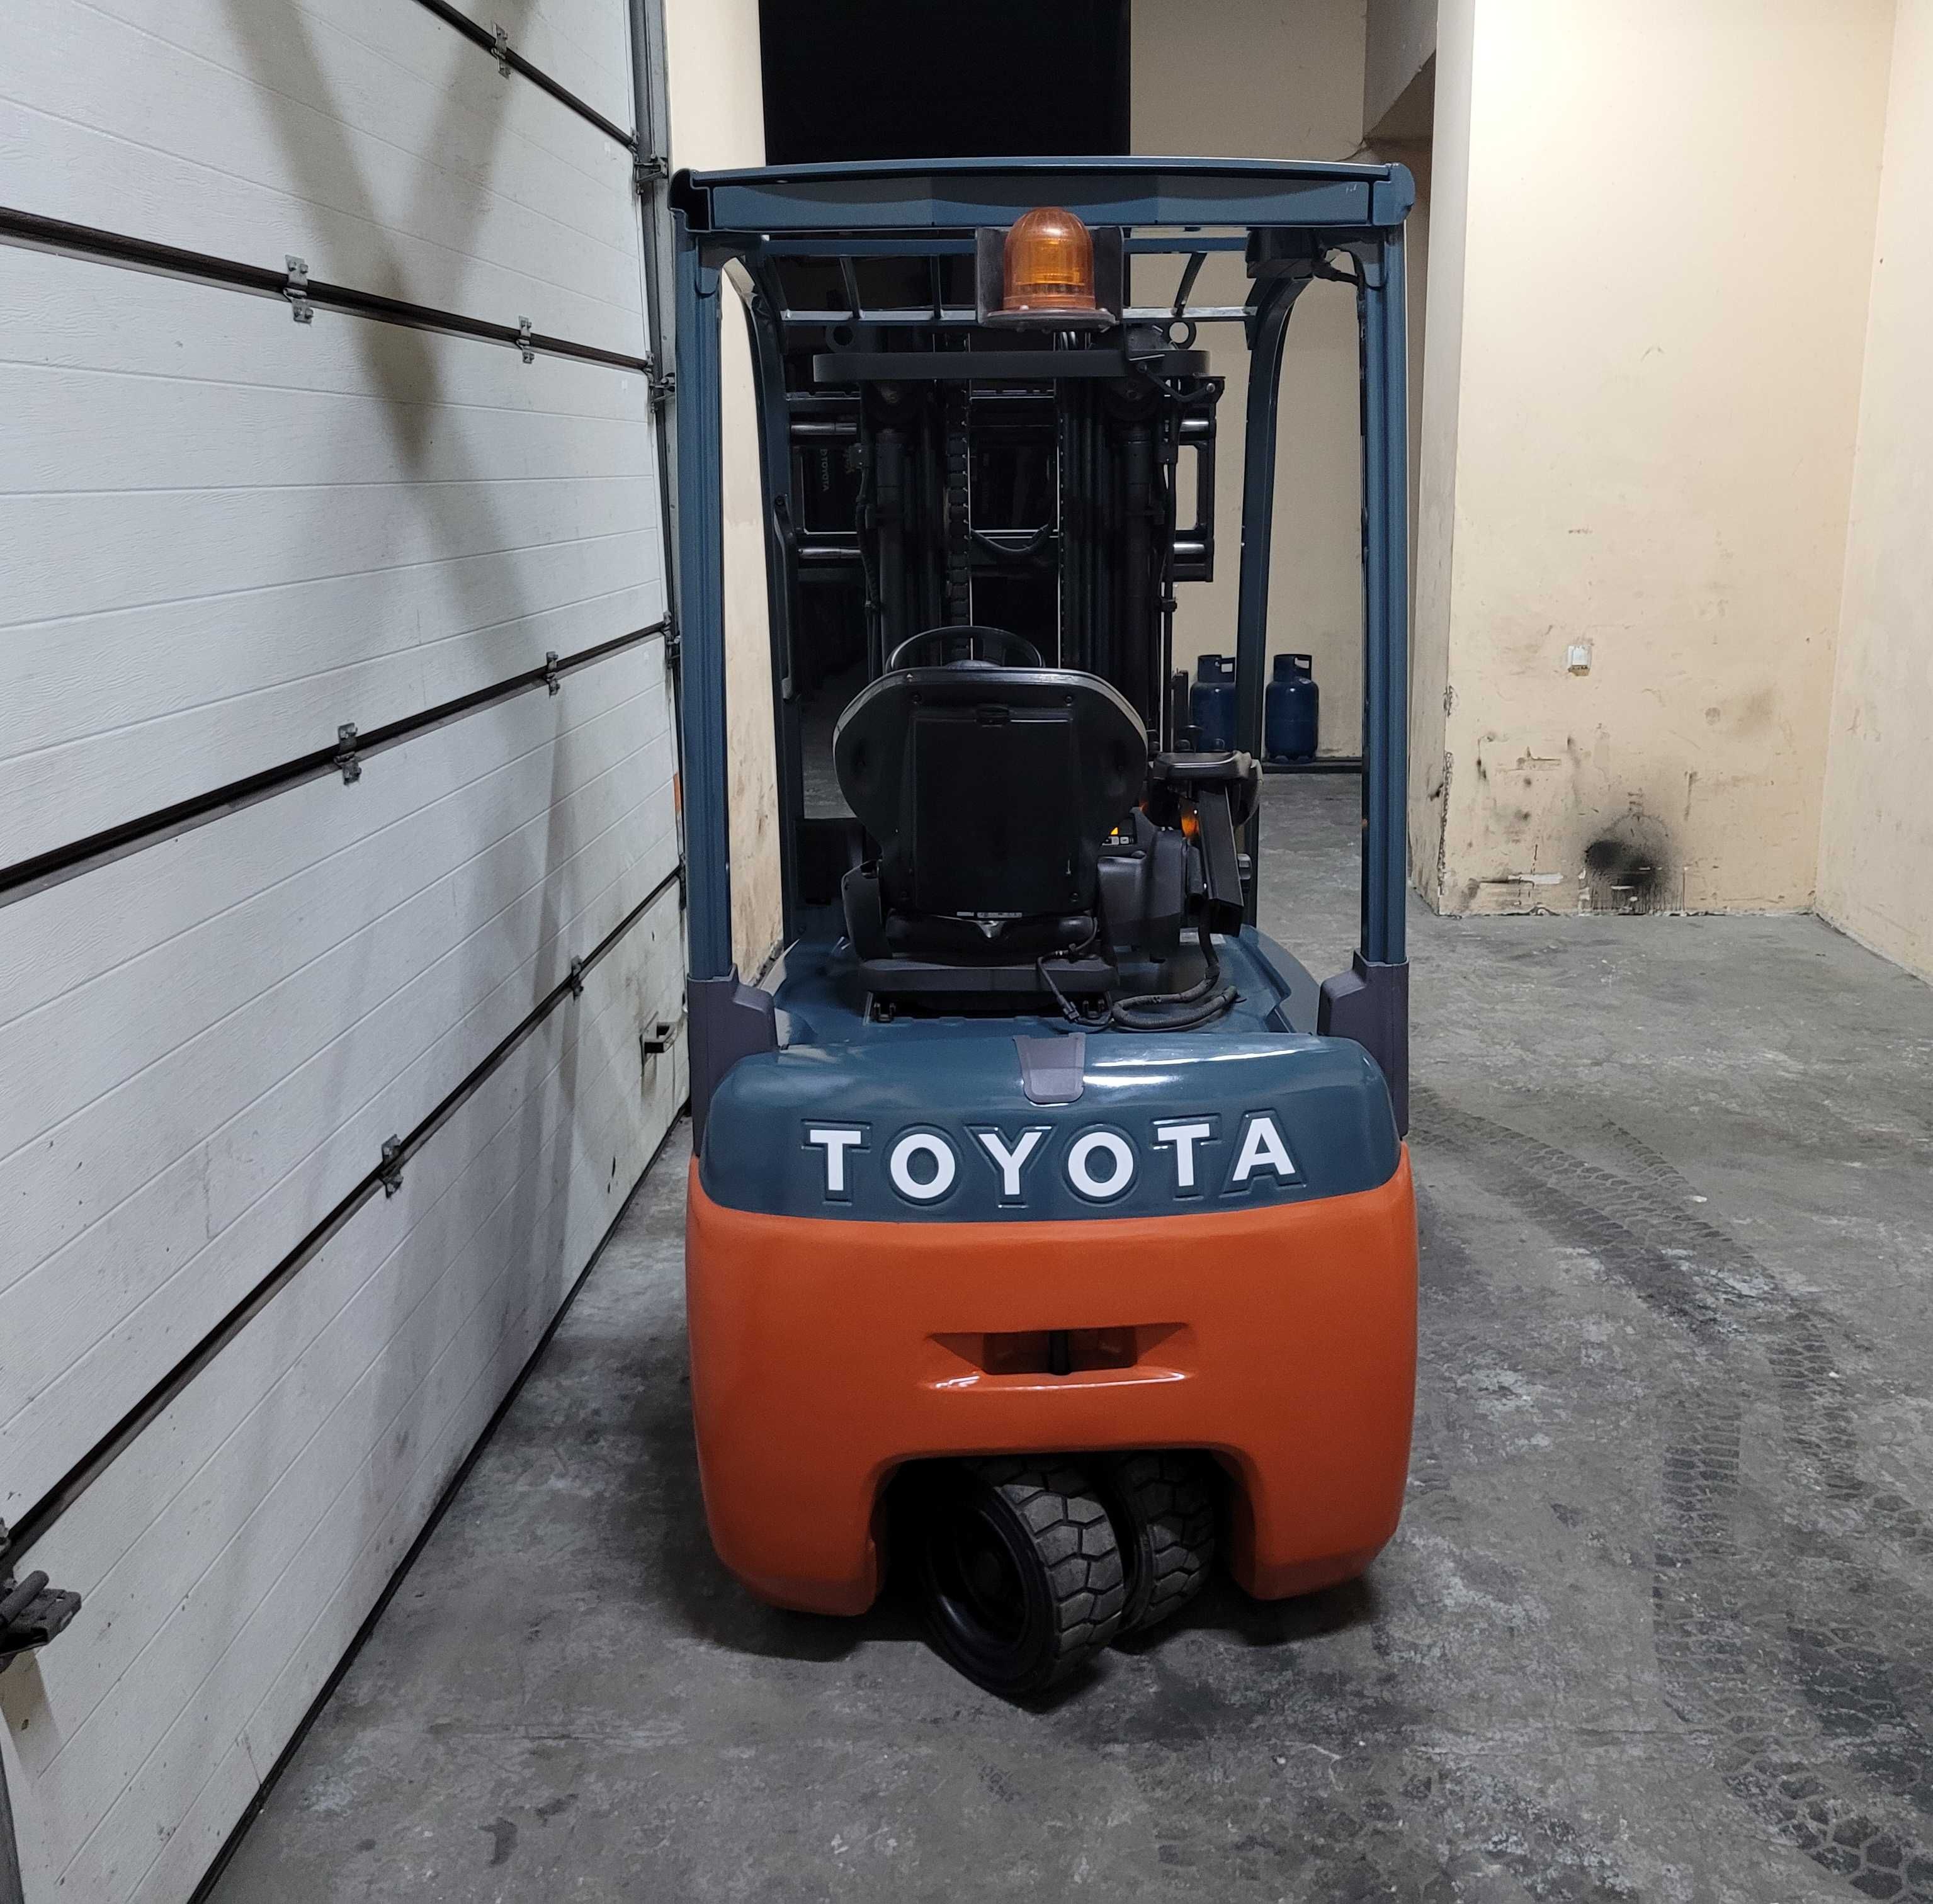 Навантажувач вилковий, електричний Toyota 1.8 тонн/ Погрузчик вилочный